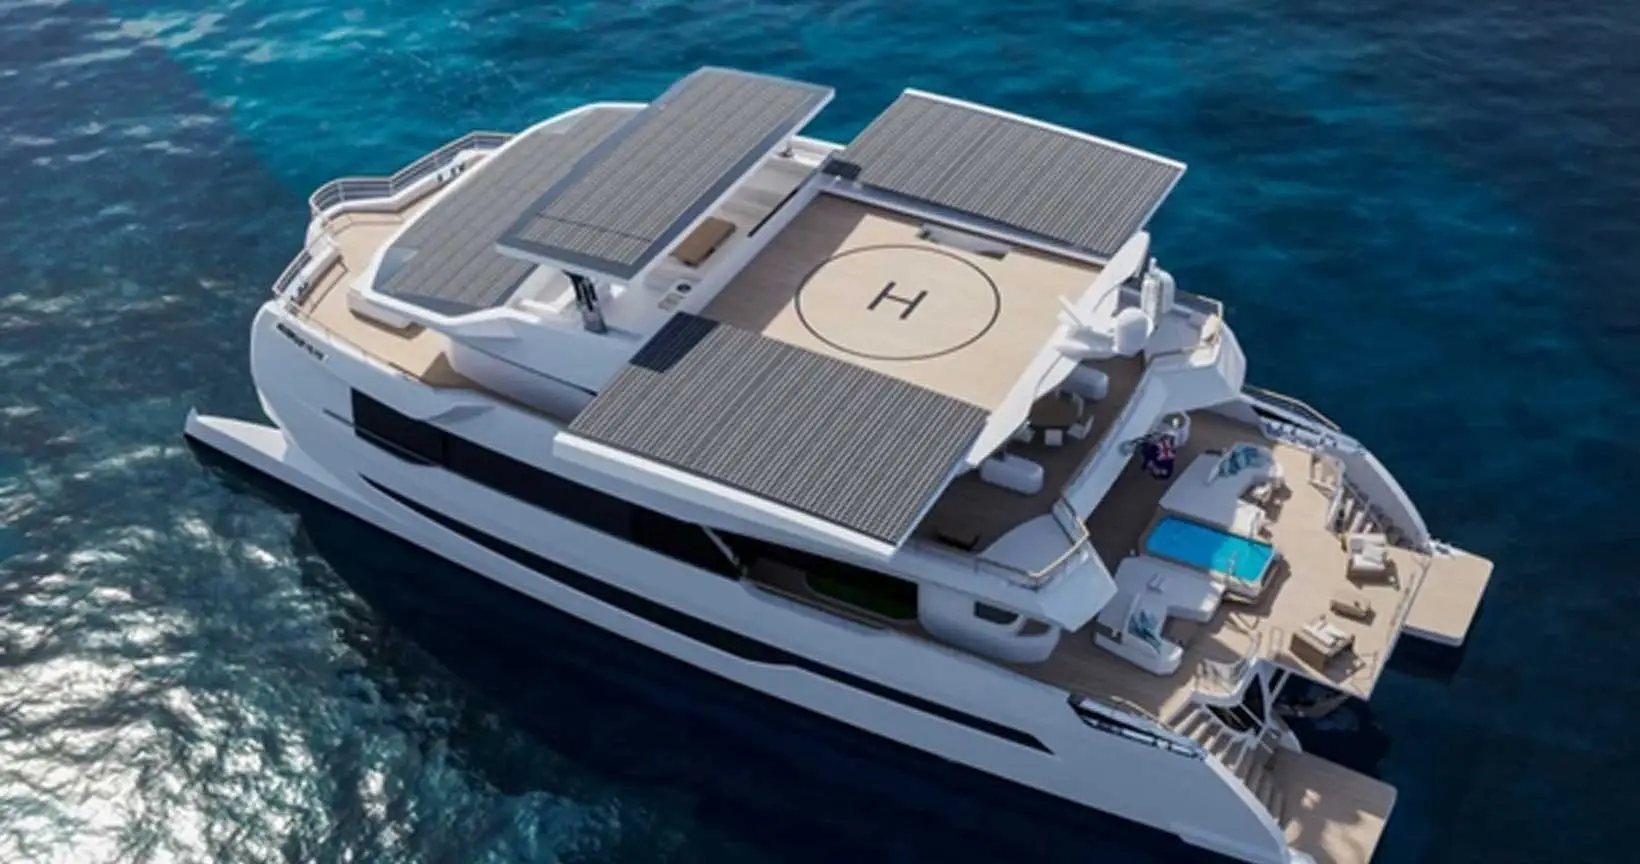 MPPT controlador de carga solar em Yachting, RV, projetos de carros turísticos